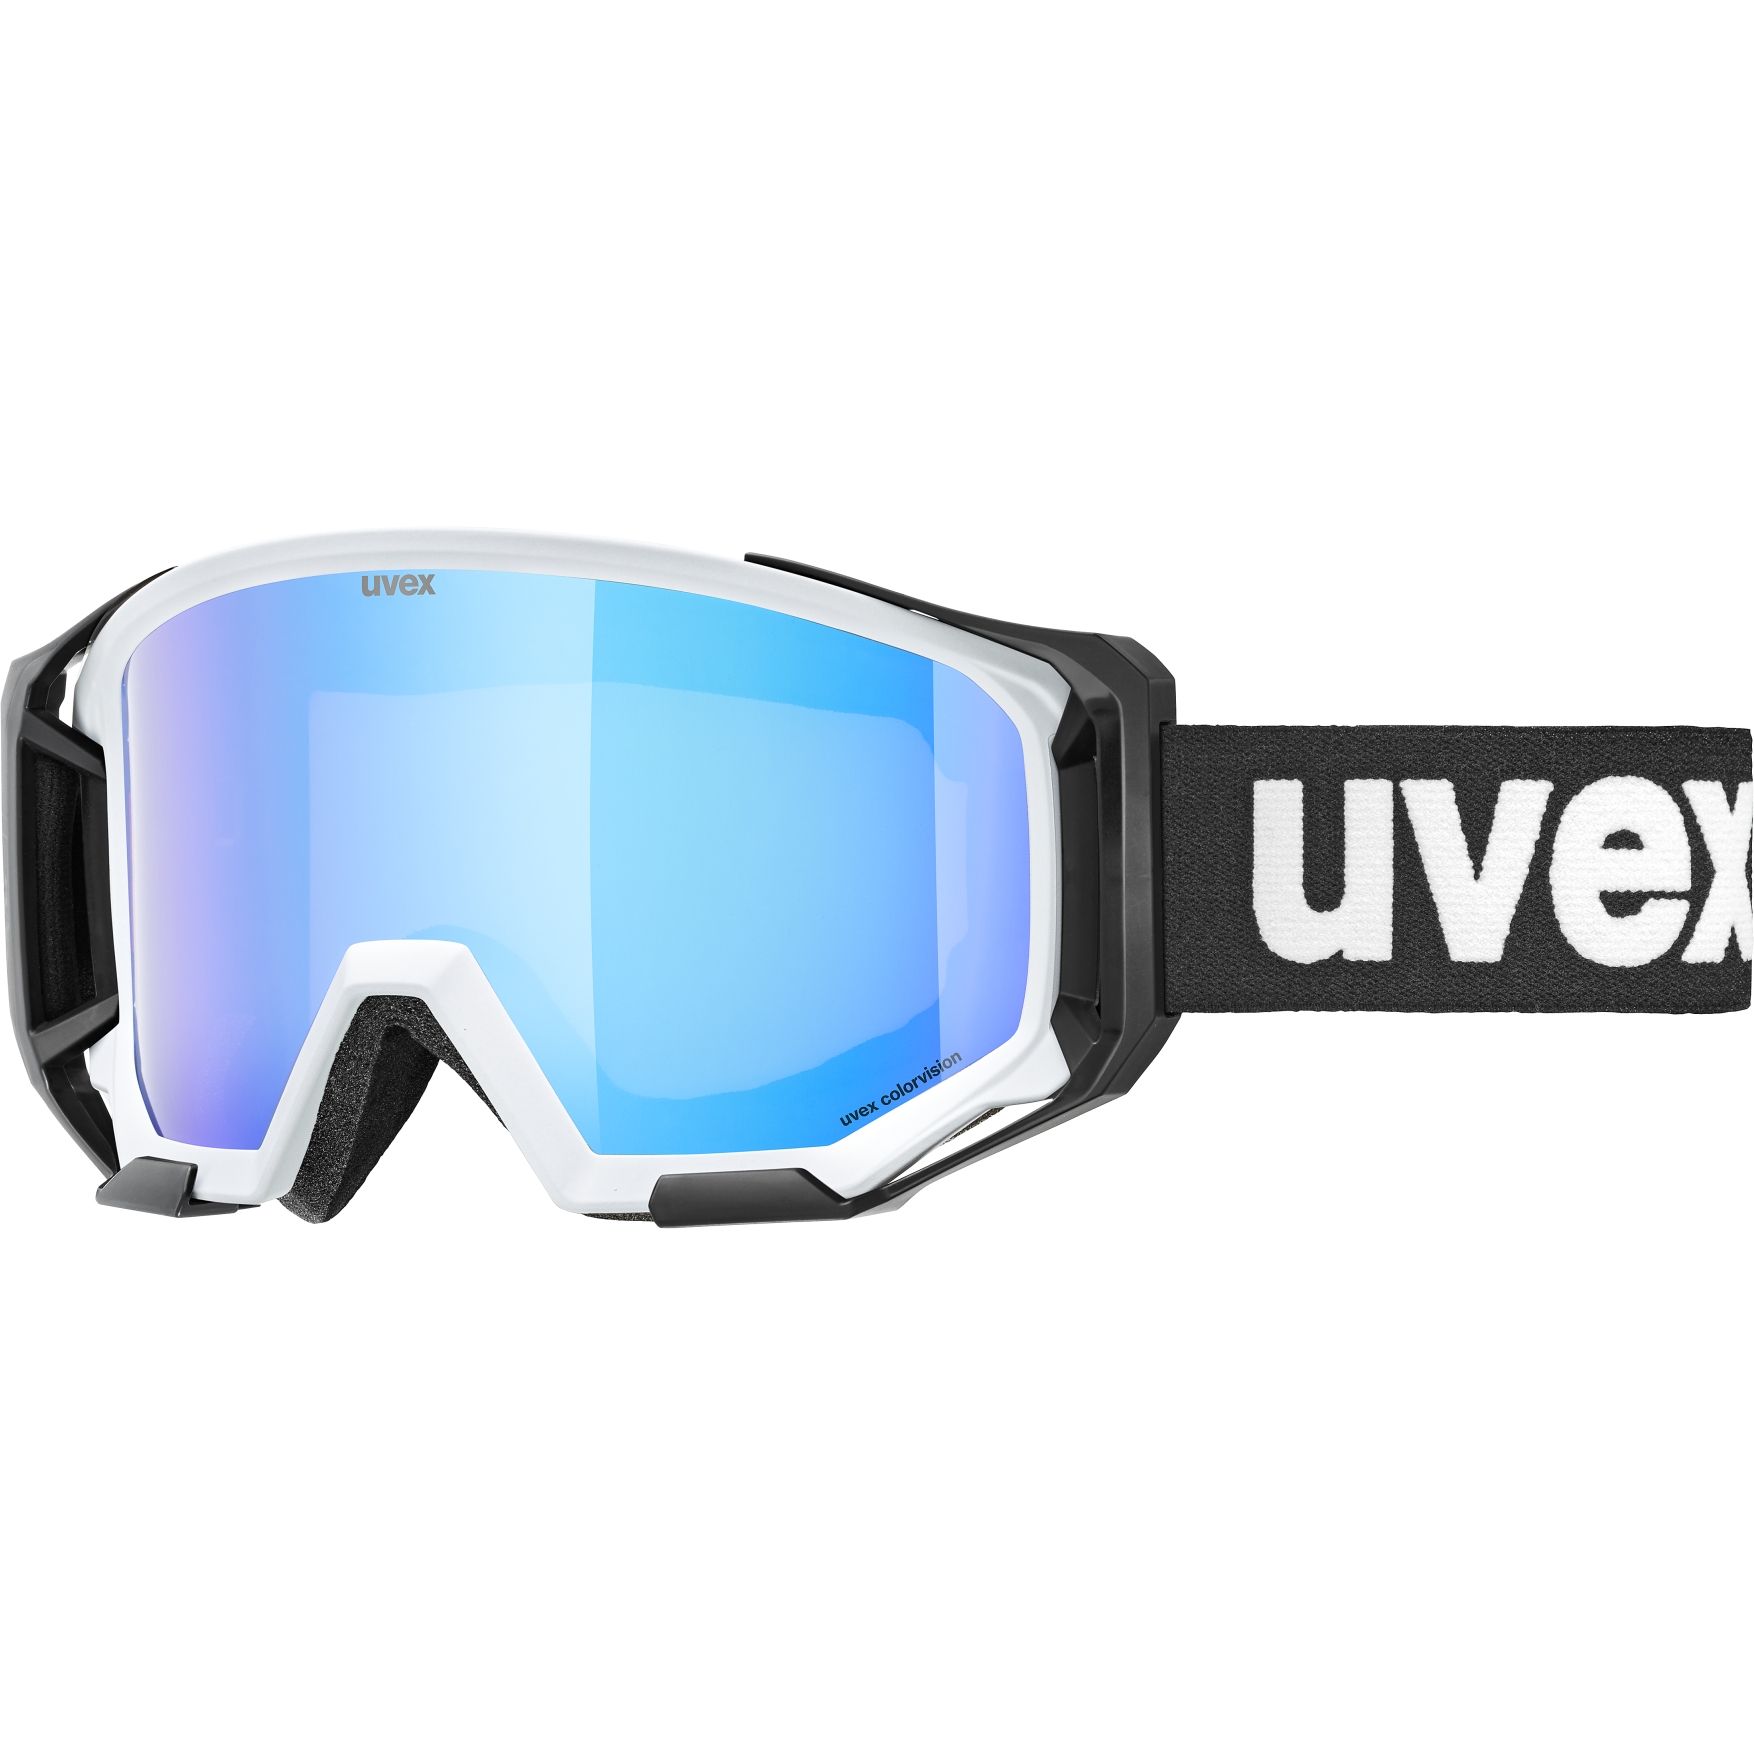 Immagine di Uvex Occhiali - athletic CV - cloud matt/colorvision green mirror blue